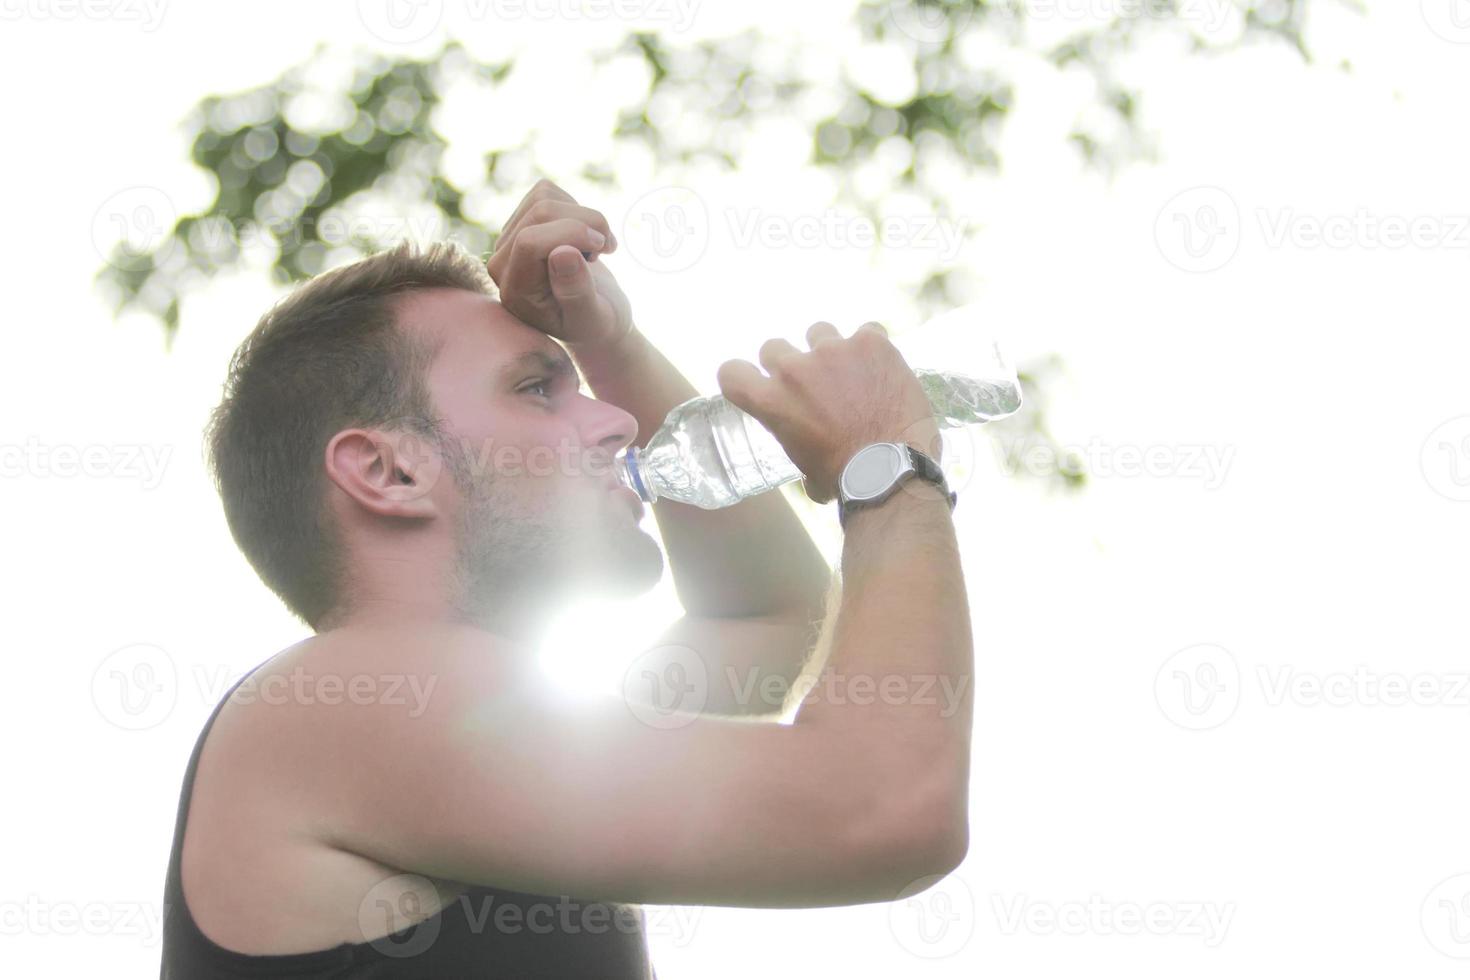 corredor masculino bebendo água mineral foto